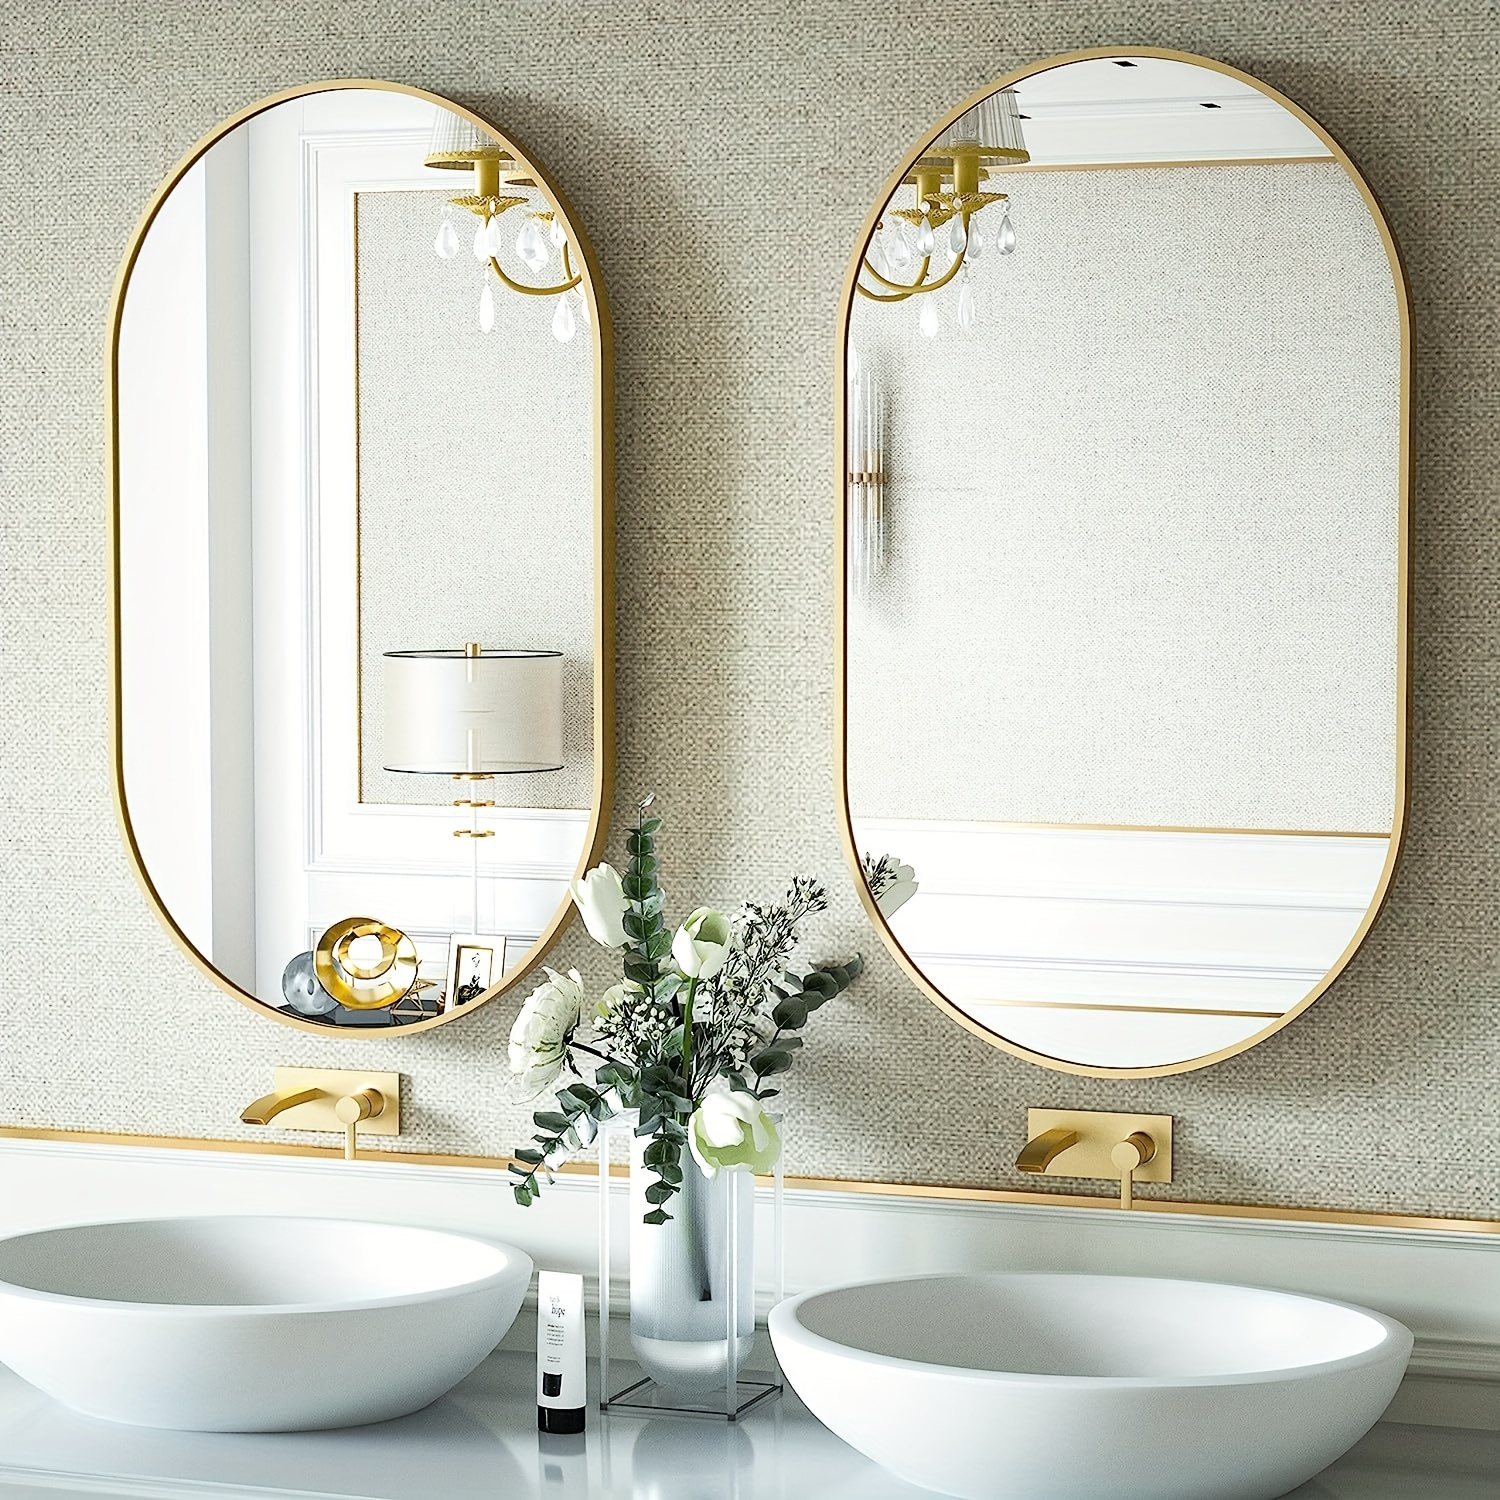 Espejo de pared para baño vertical y horizontal Espejo colgante rectangular  con marco de madera dorado